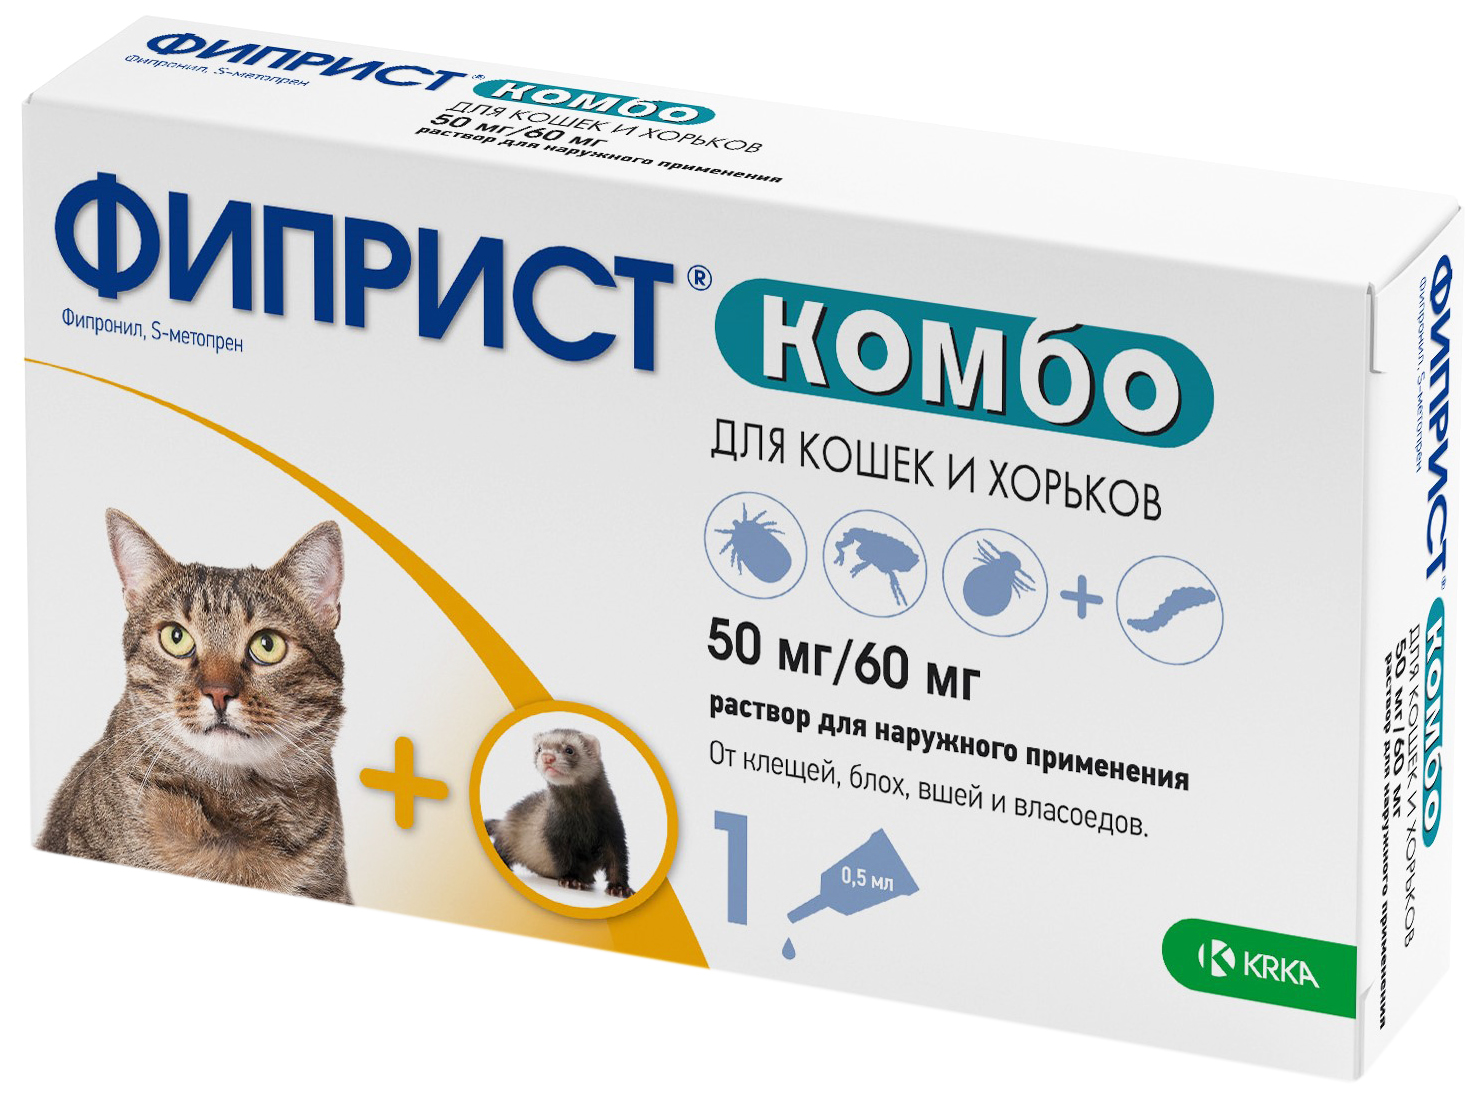 Капли для кошек и хорьков против паразитовв KRKA Фиприст, 1 пипетка, 0,5 мл